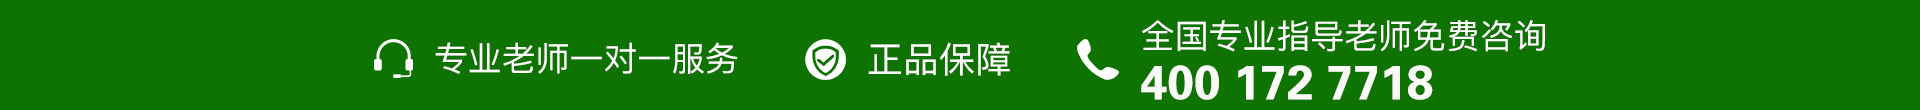 绿色电话-banner图下方-PC - 副本 (6).jpg